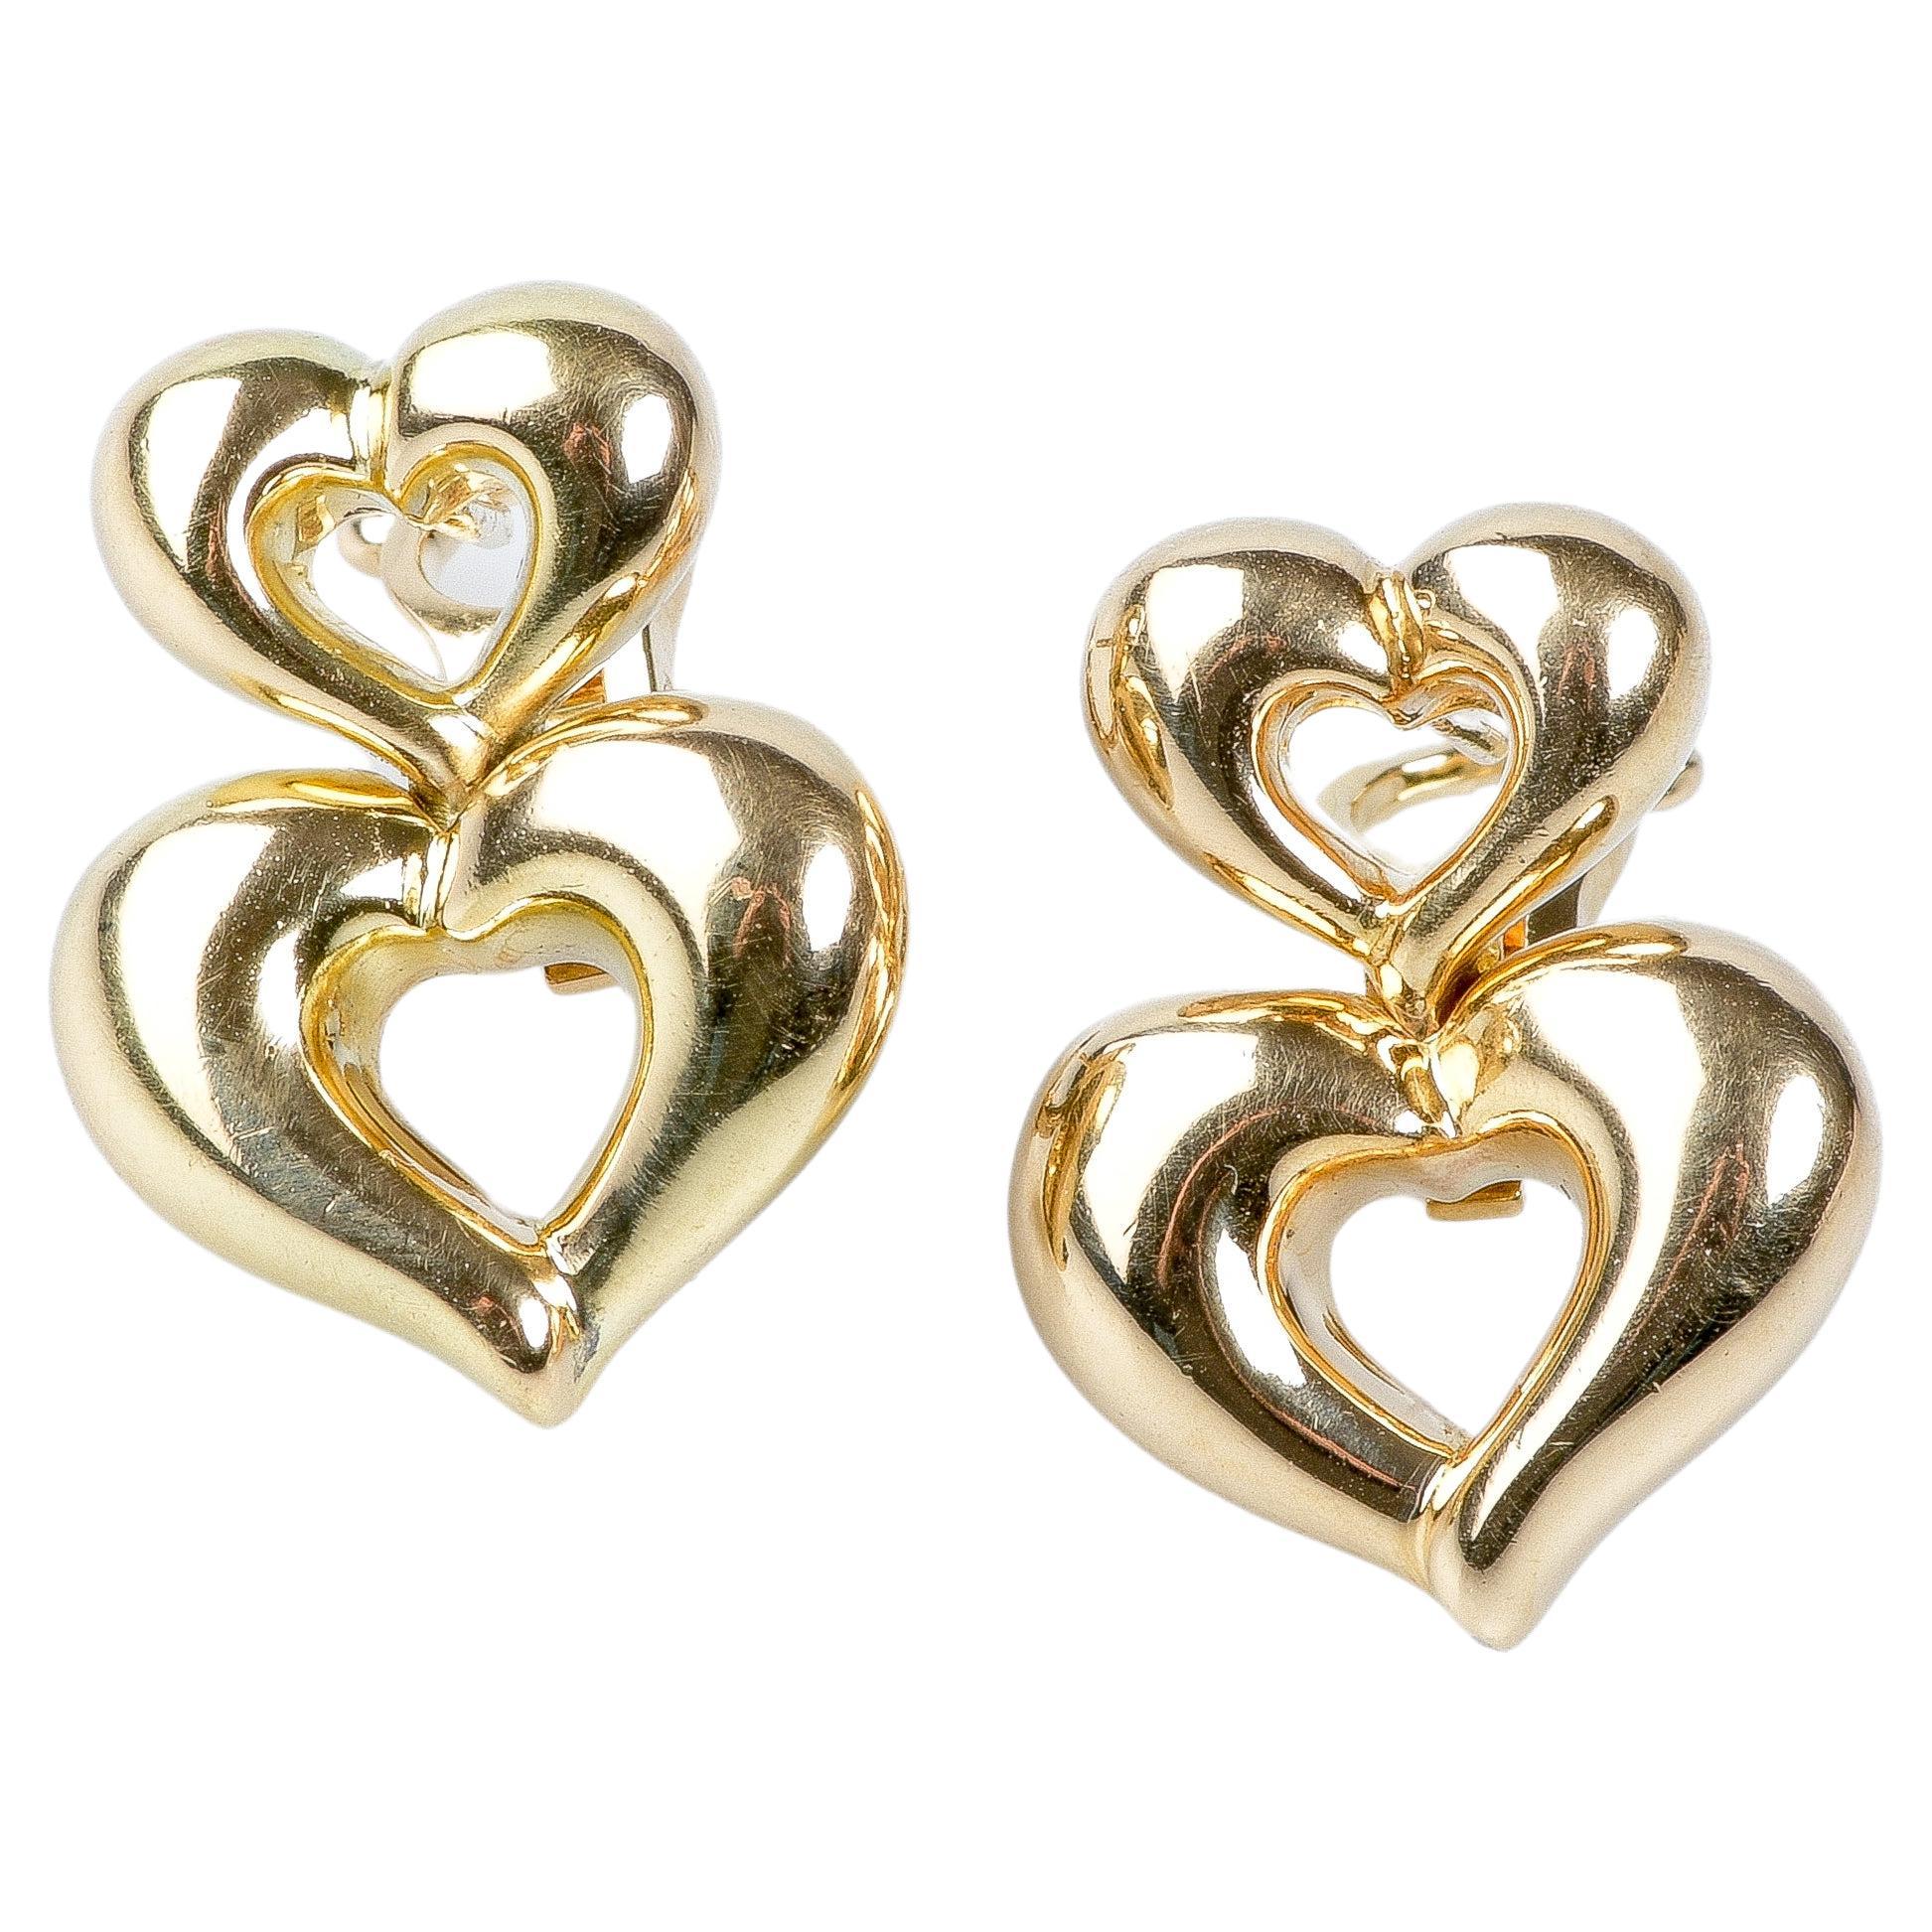 VCA Heart Shaped Earrings in 18K Gold